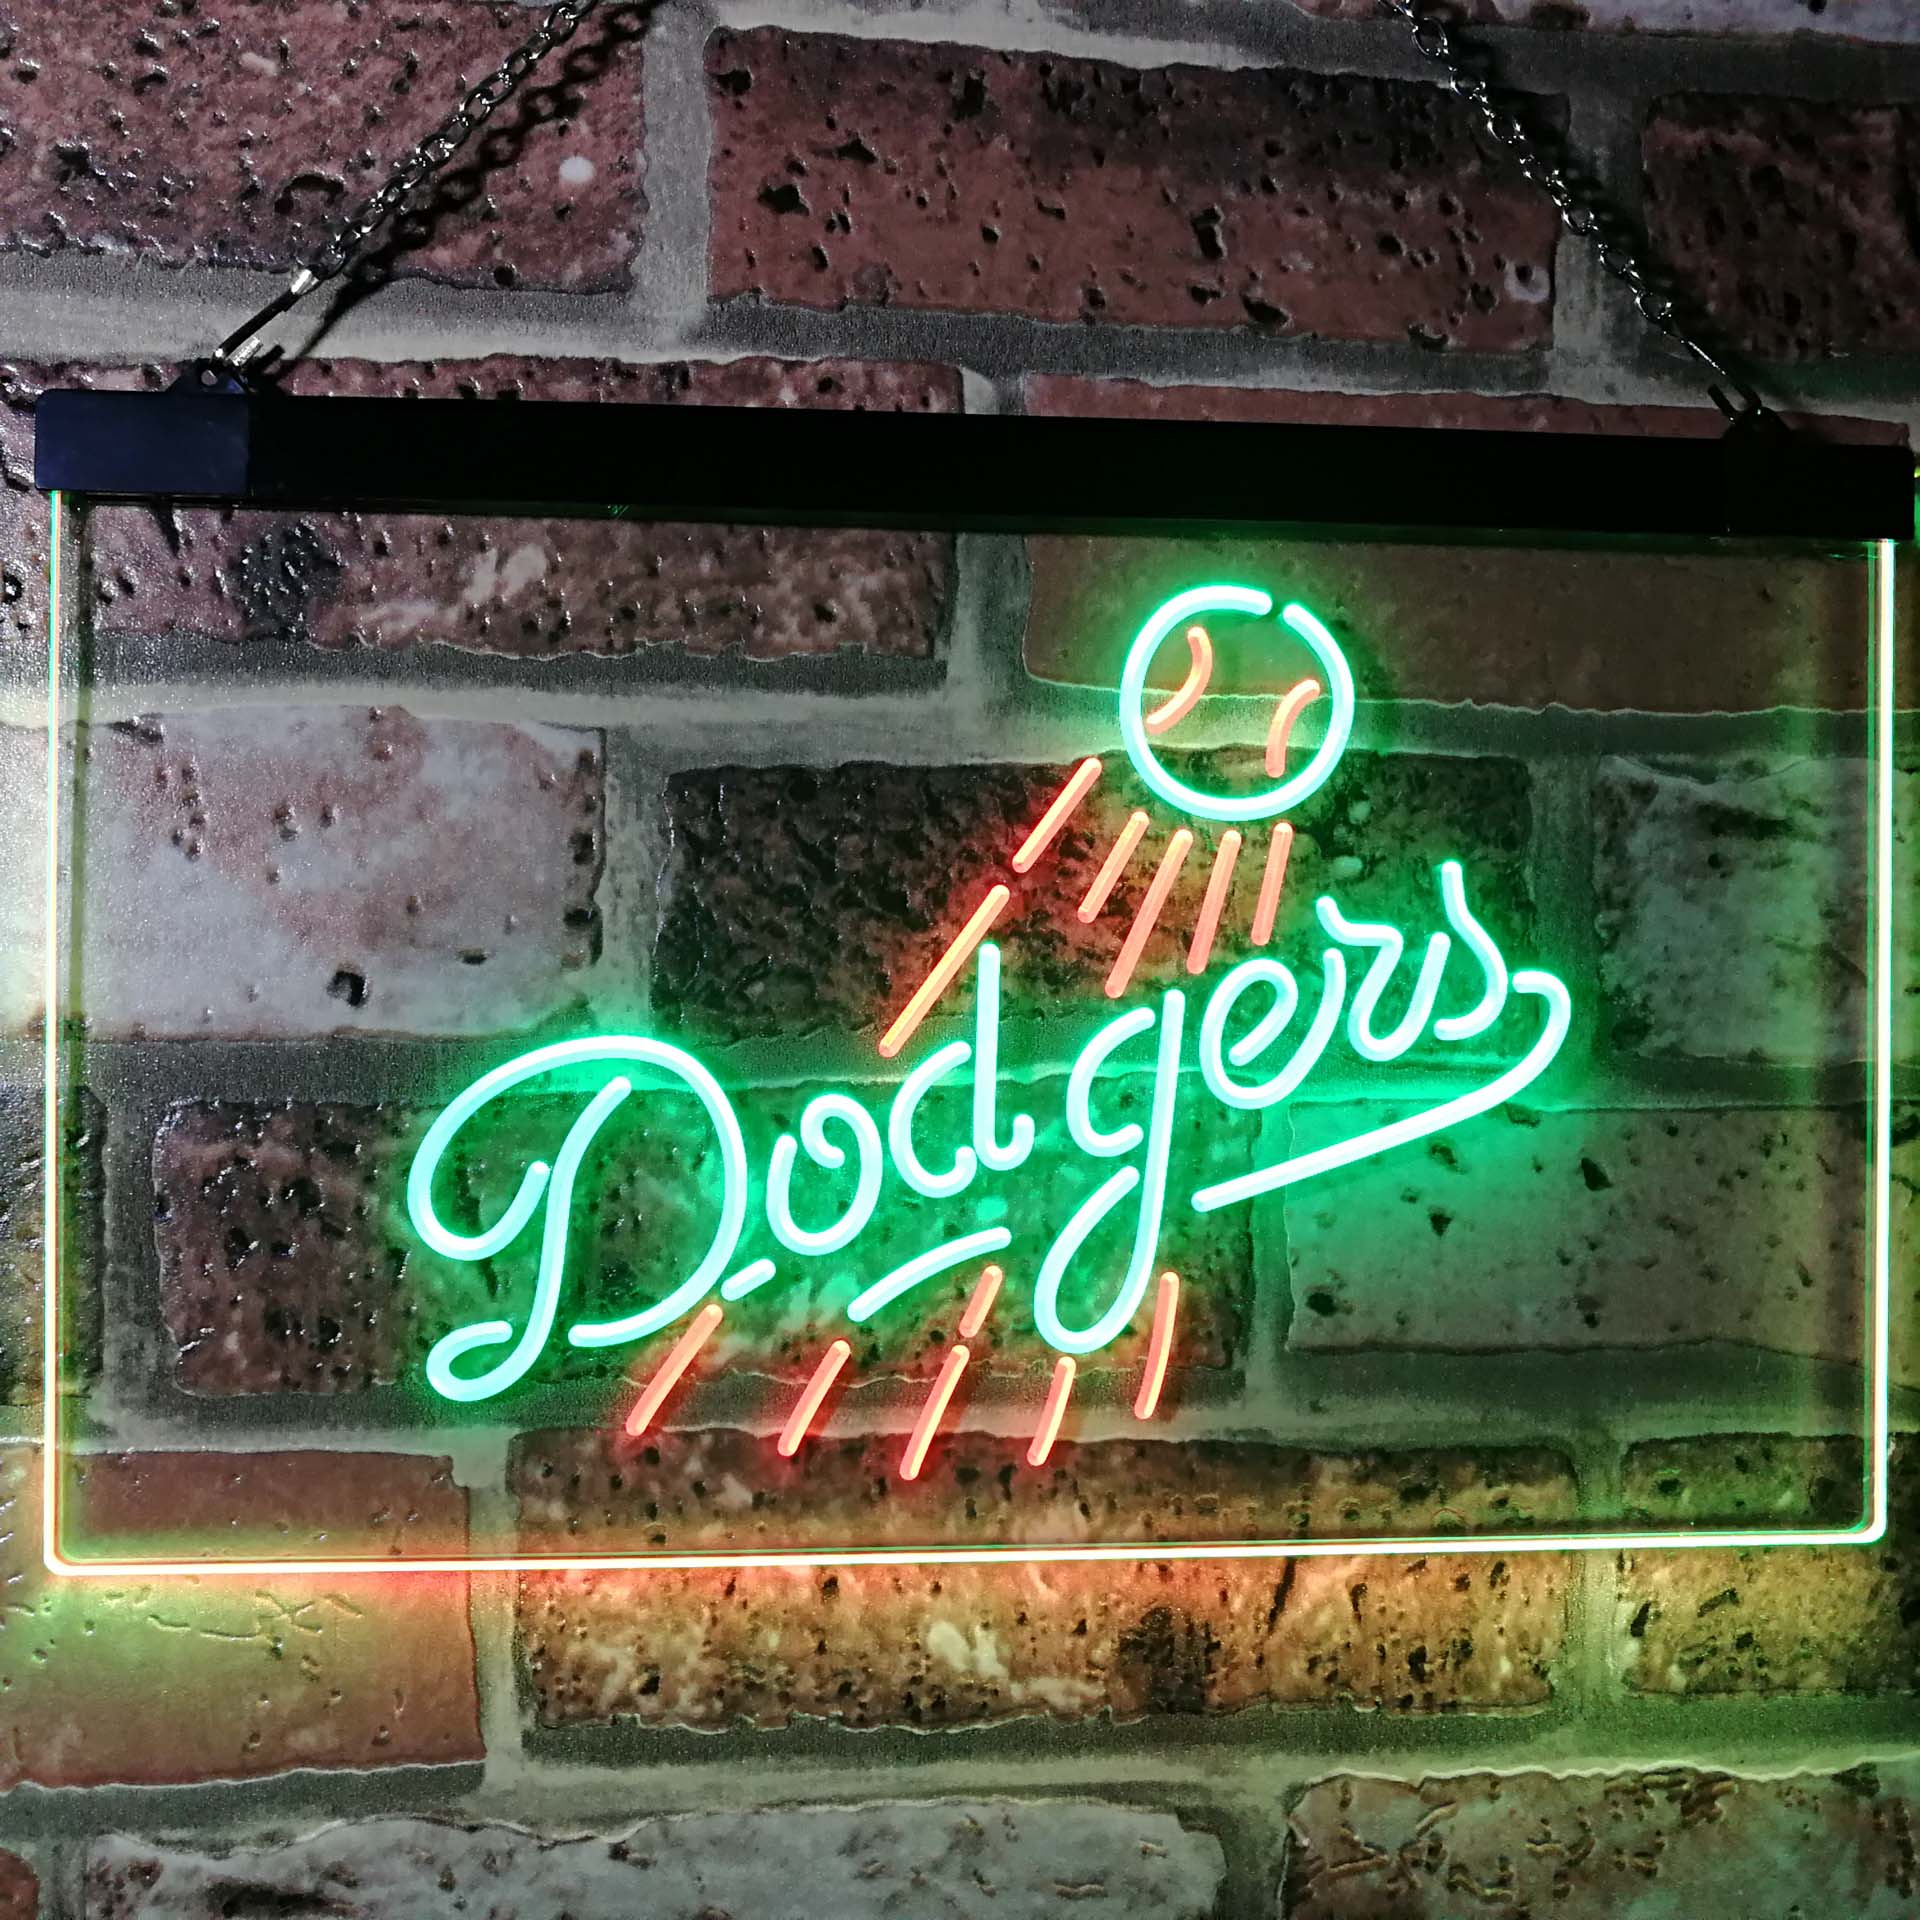 LA Sport Team Pub Club League Dodgers LED Neon Sign